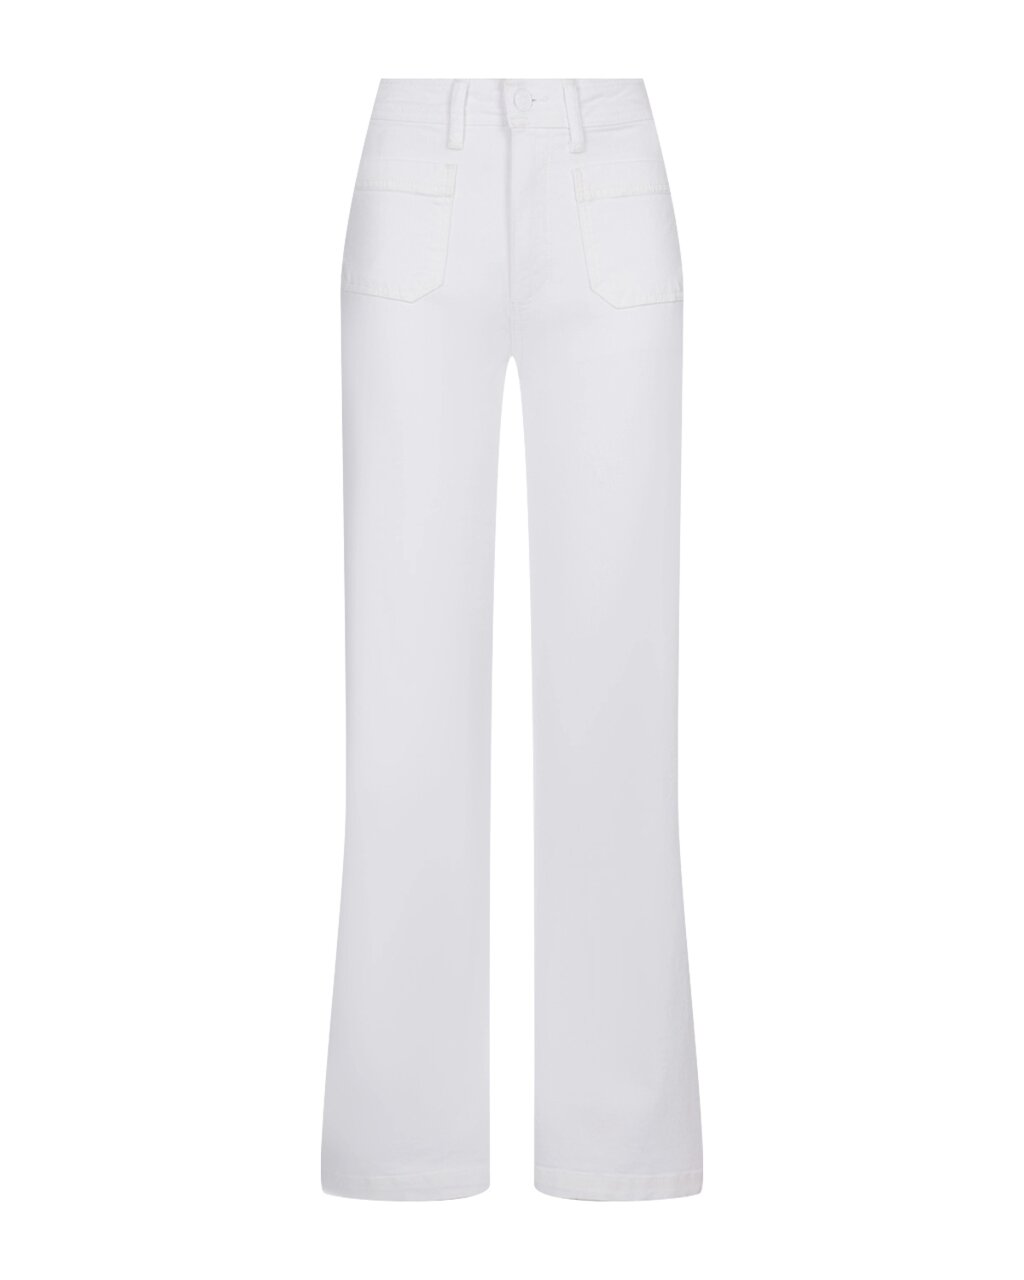 Белые джинсы клеш Paige от компании Admi - фото 1